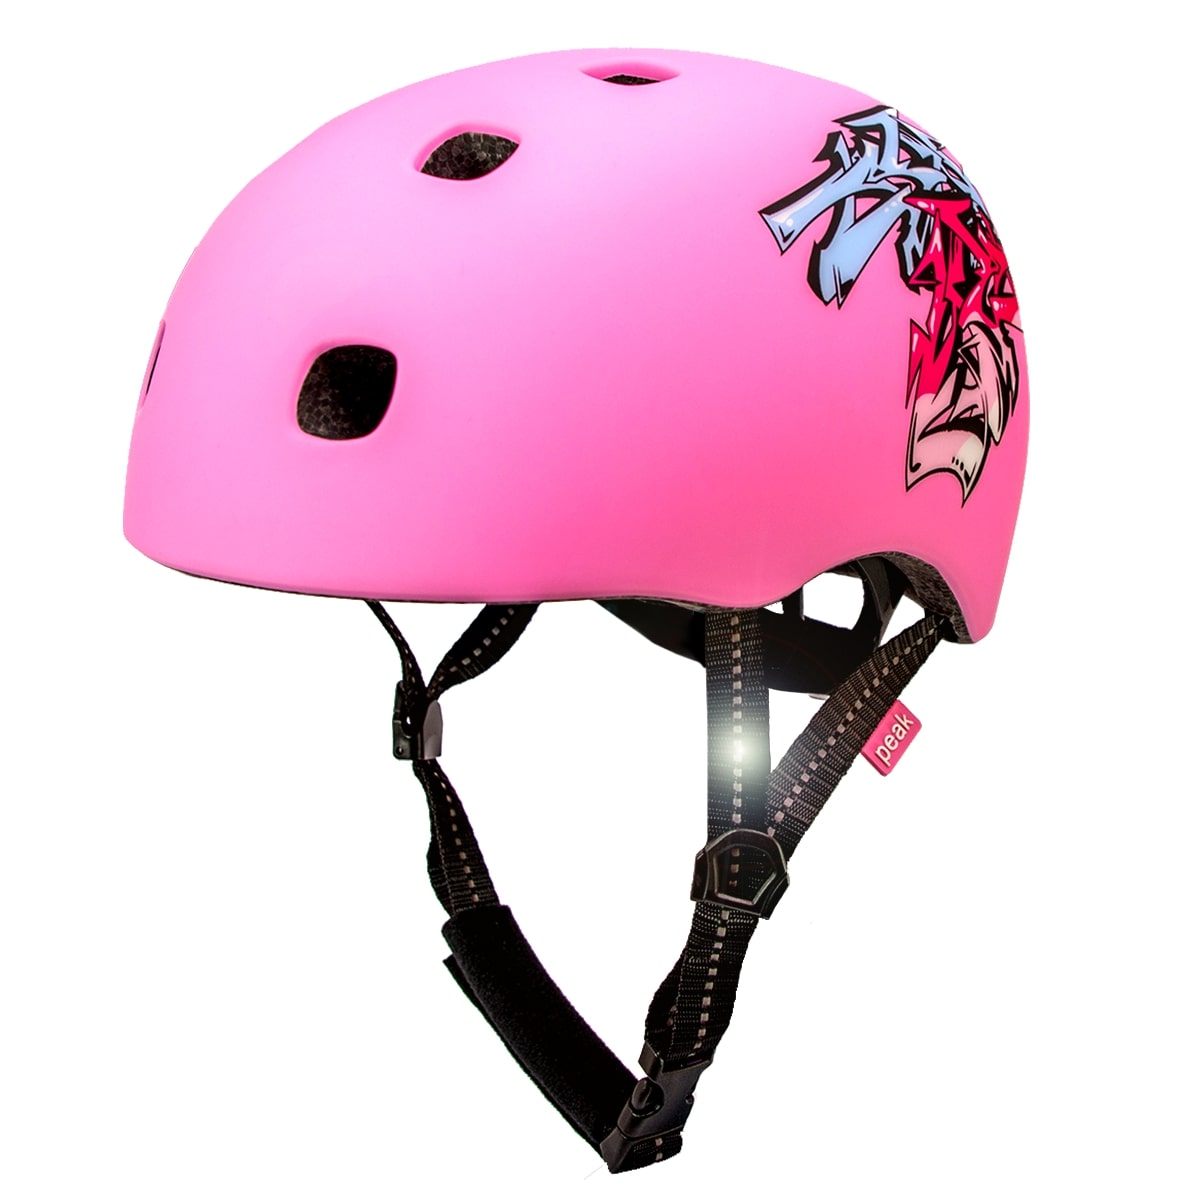 Crazy pink in-mould Skater cykelhjelm til teens voksne. Testet, certificeret og godkendt EN1078